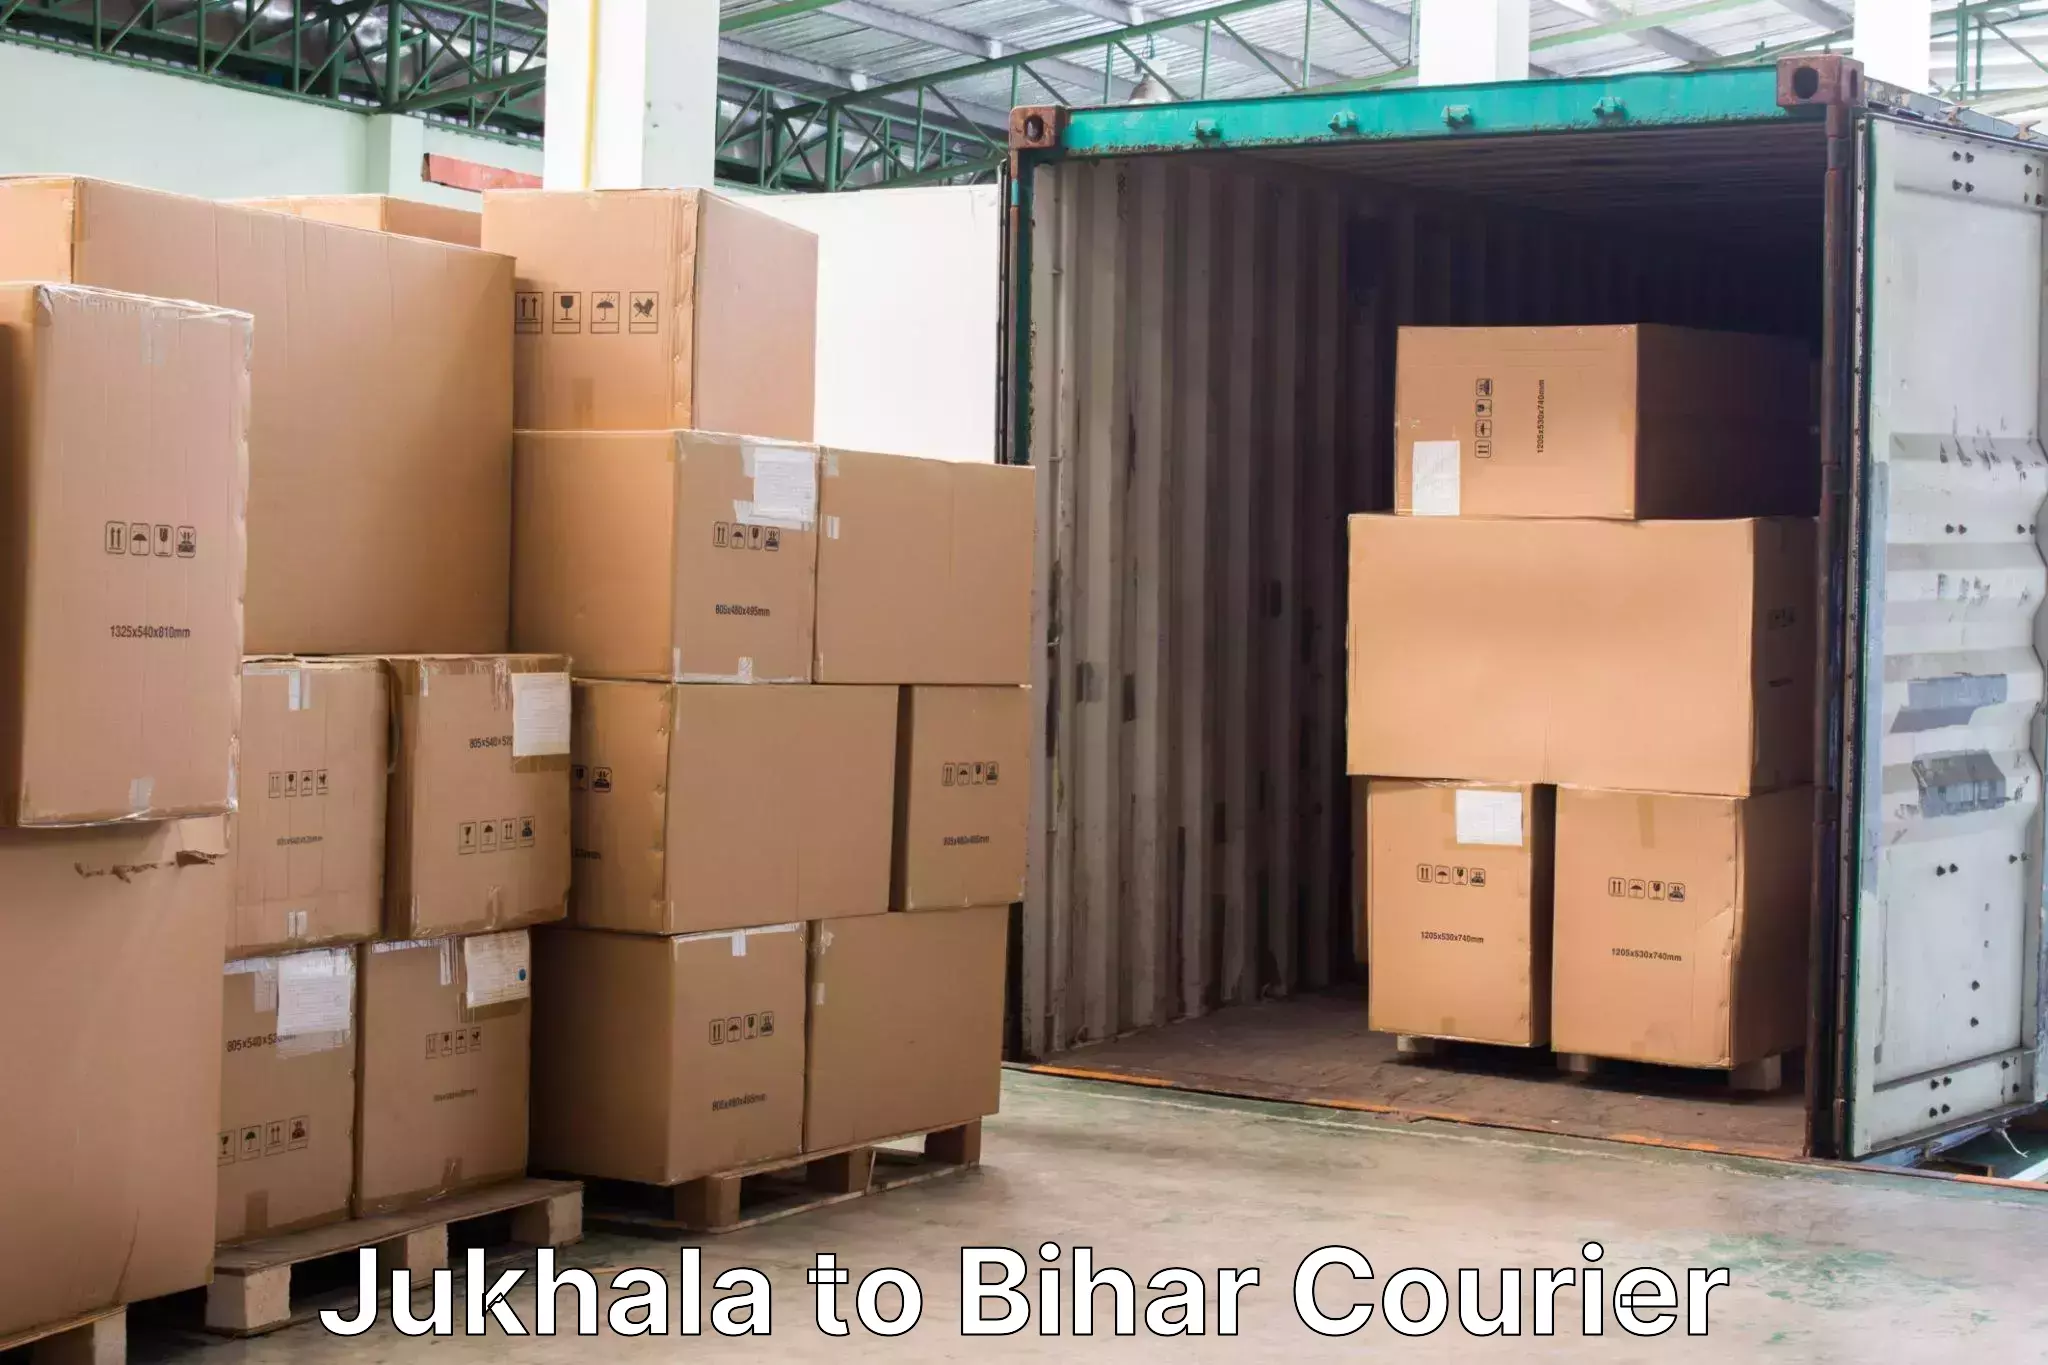 Baggage transport estimate Jukhala to Giddha